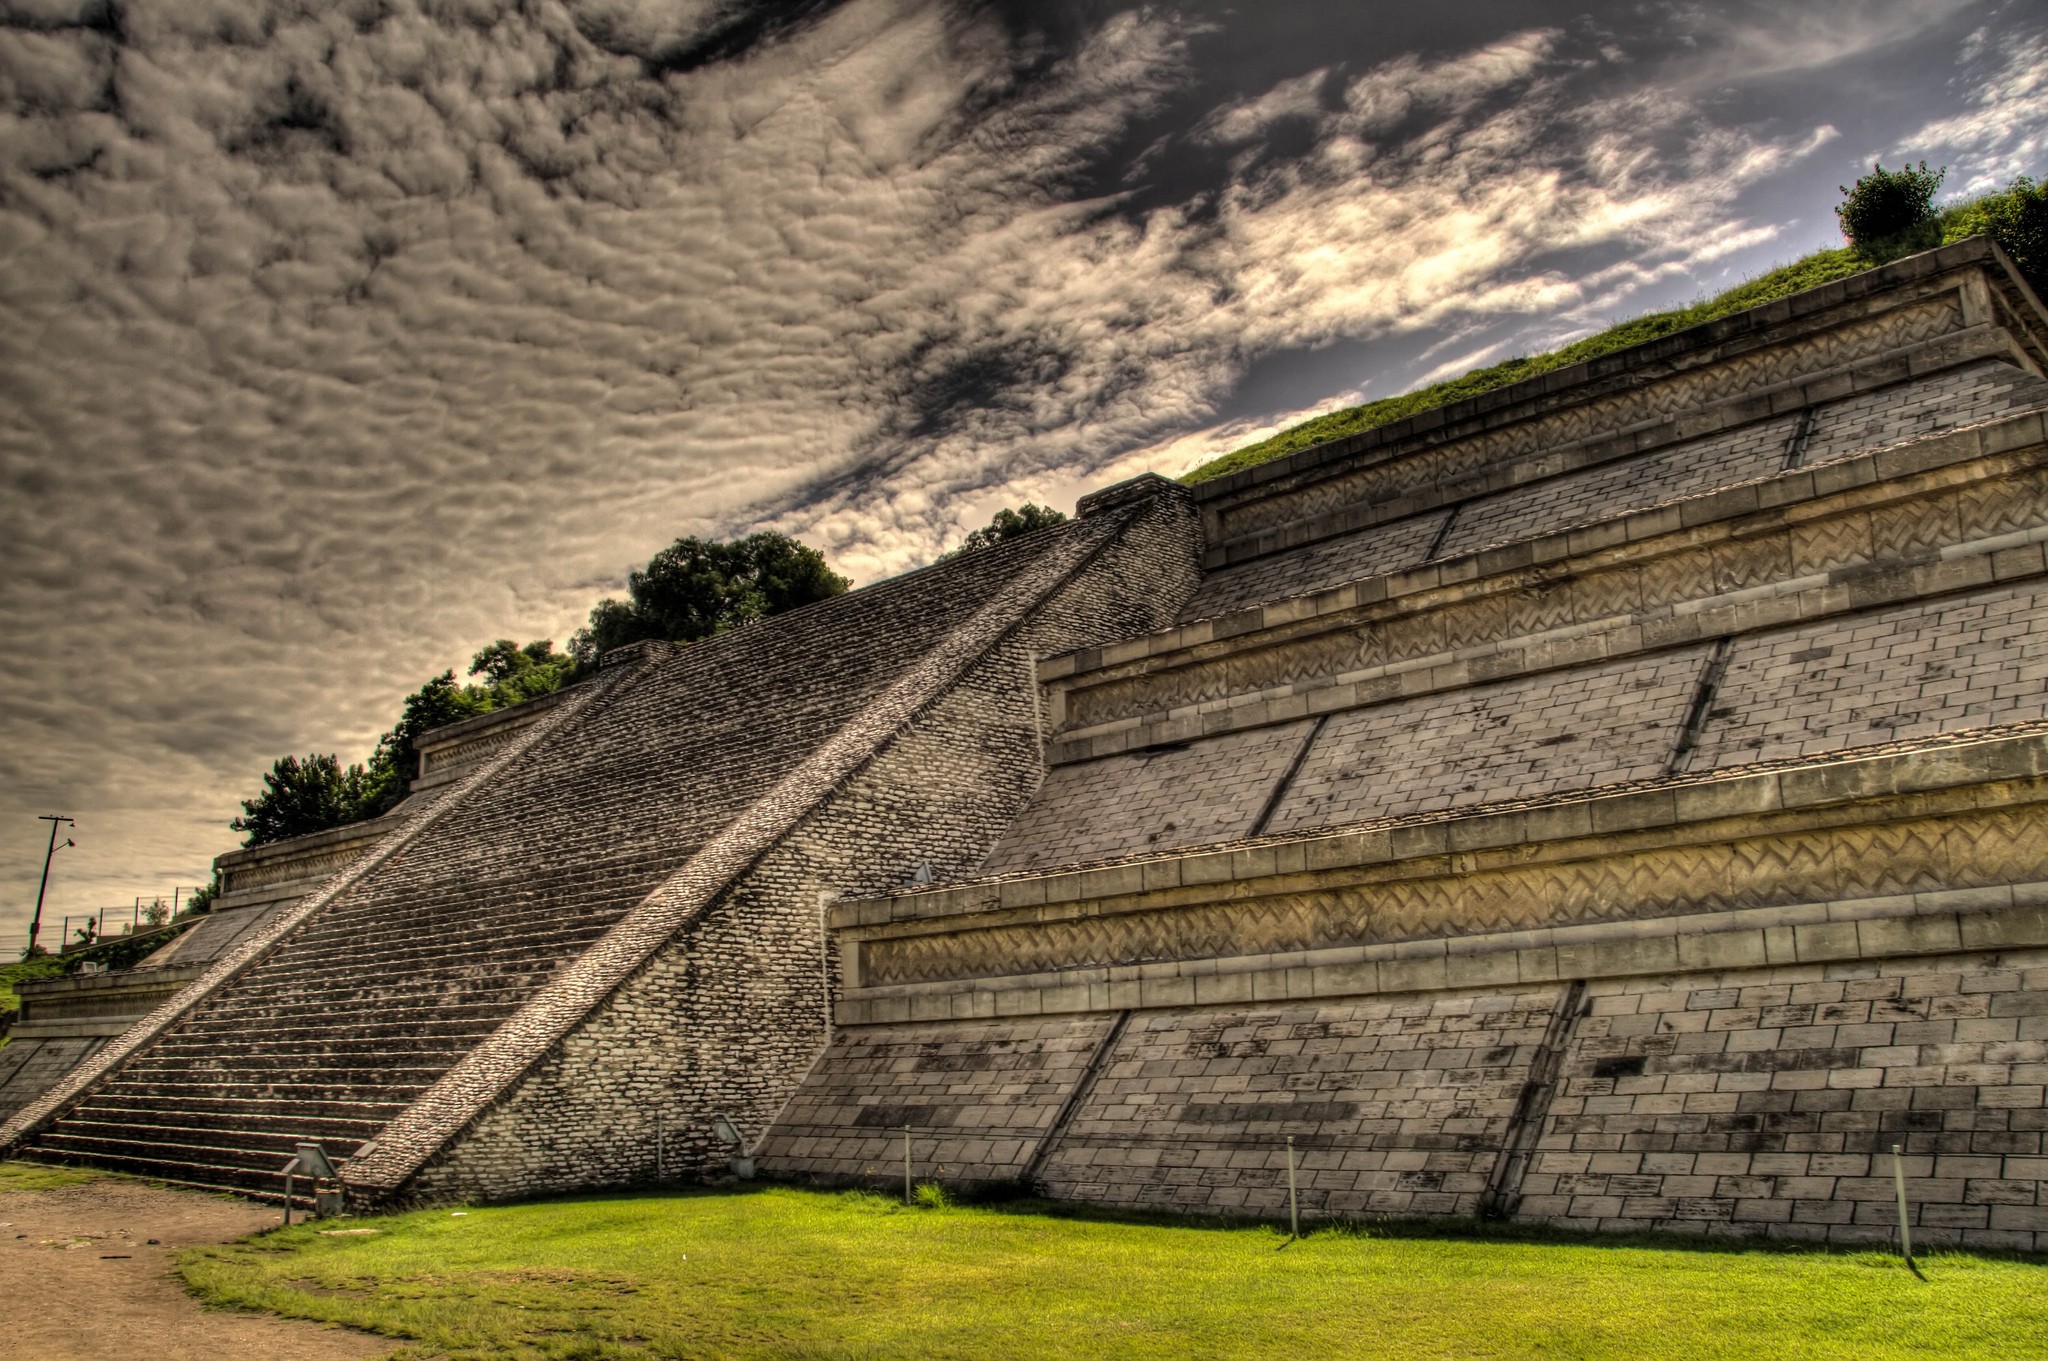 Pirâmide de Tepanapa, no México, é a maior do que as famosas pirâmides do Egito (Foto: Ronald Woan/Flickr)